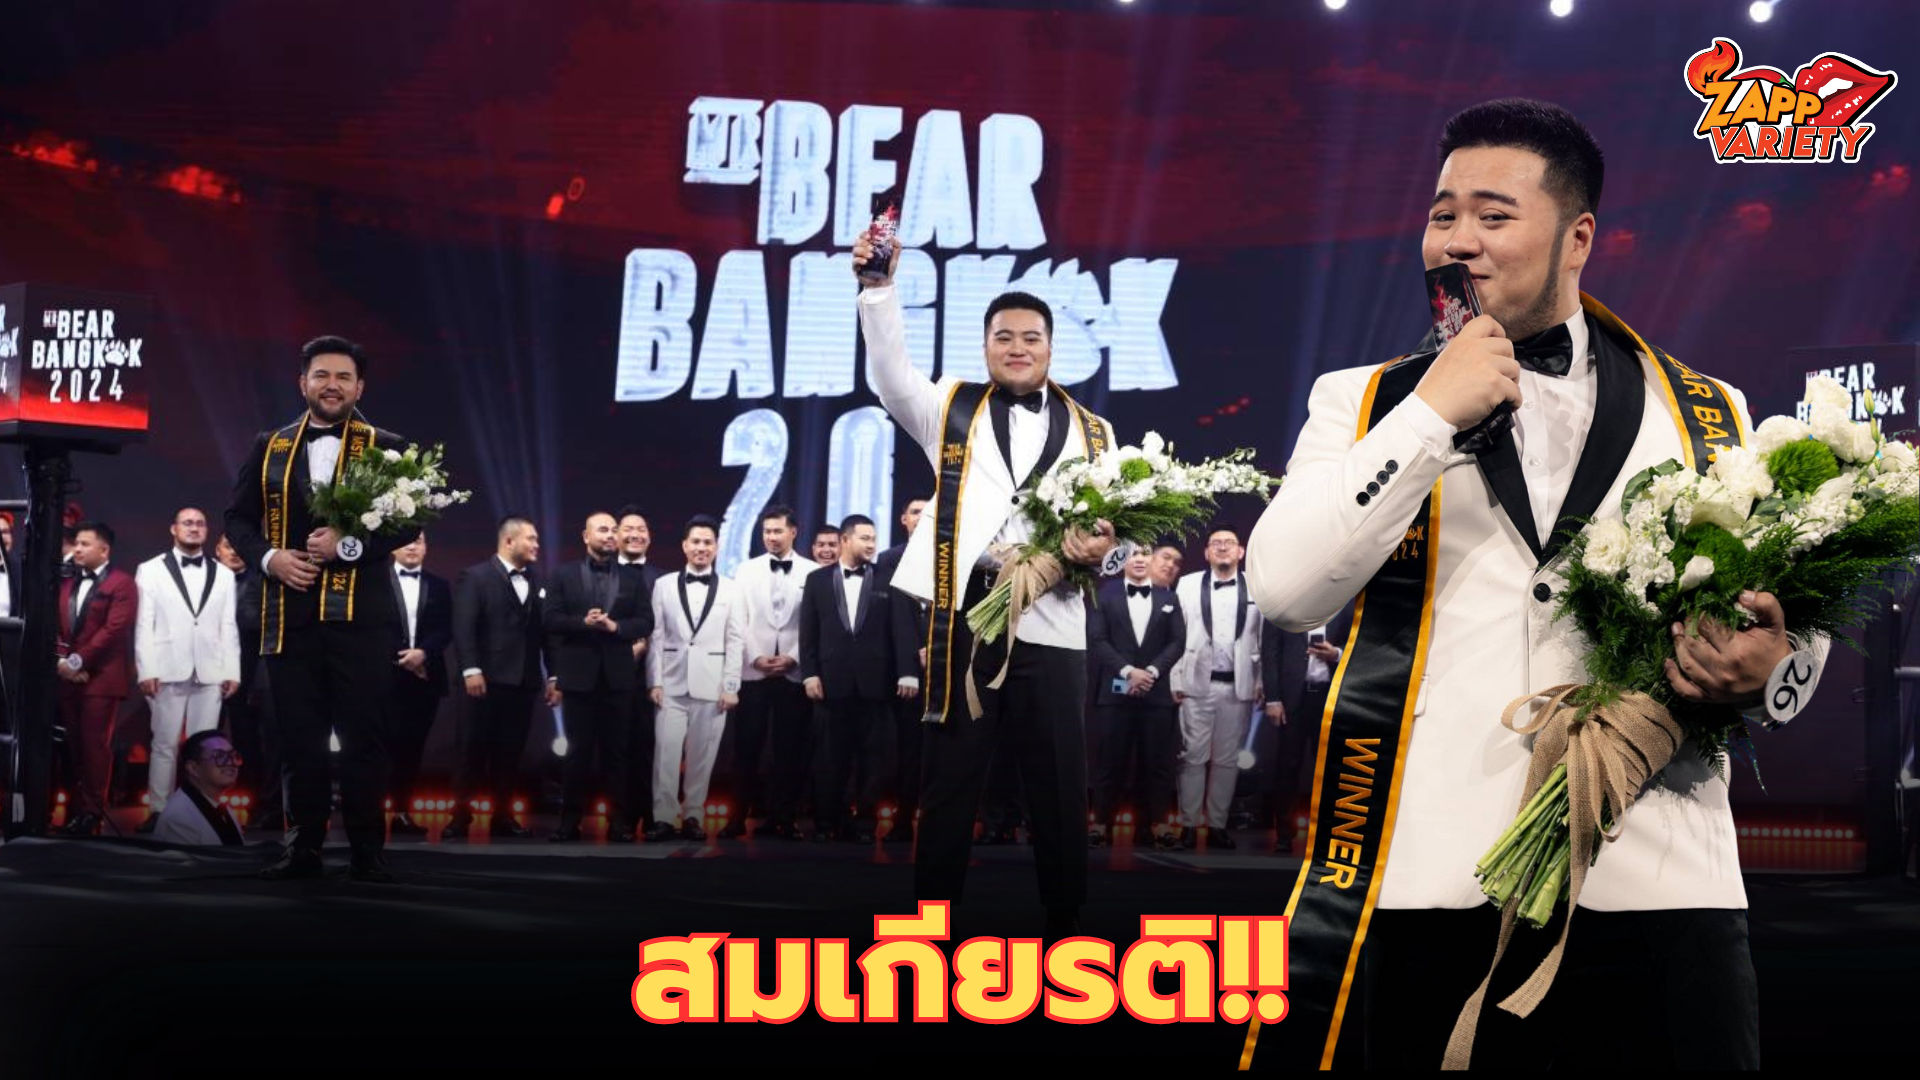 ยิ่งใหญ่ สมการรอคอยรอบ Final Show Mister Bear Bangkok 2024  “นิวแซน-ณดล ณ บางช้าง” คว้าตำแหน่งชนะเลิศอันดับ1 เป็นตัวแทนคนไทยเพื่อไปประกวดเวที Mister Bear International 